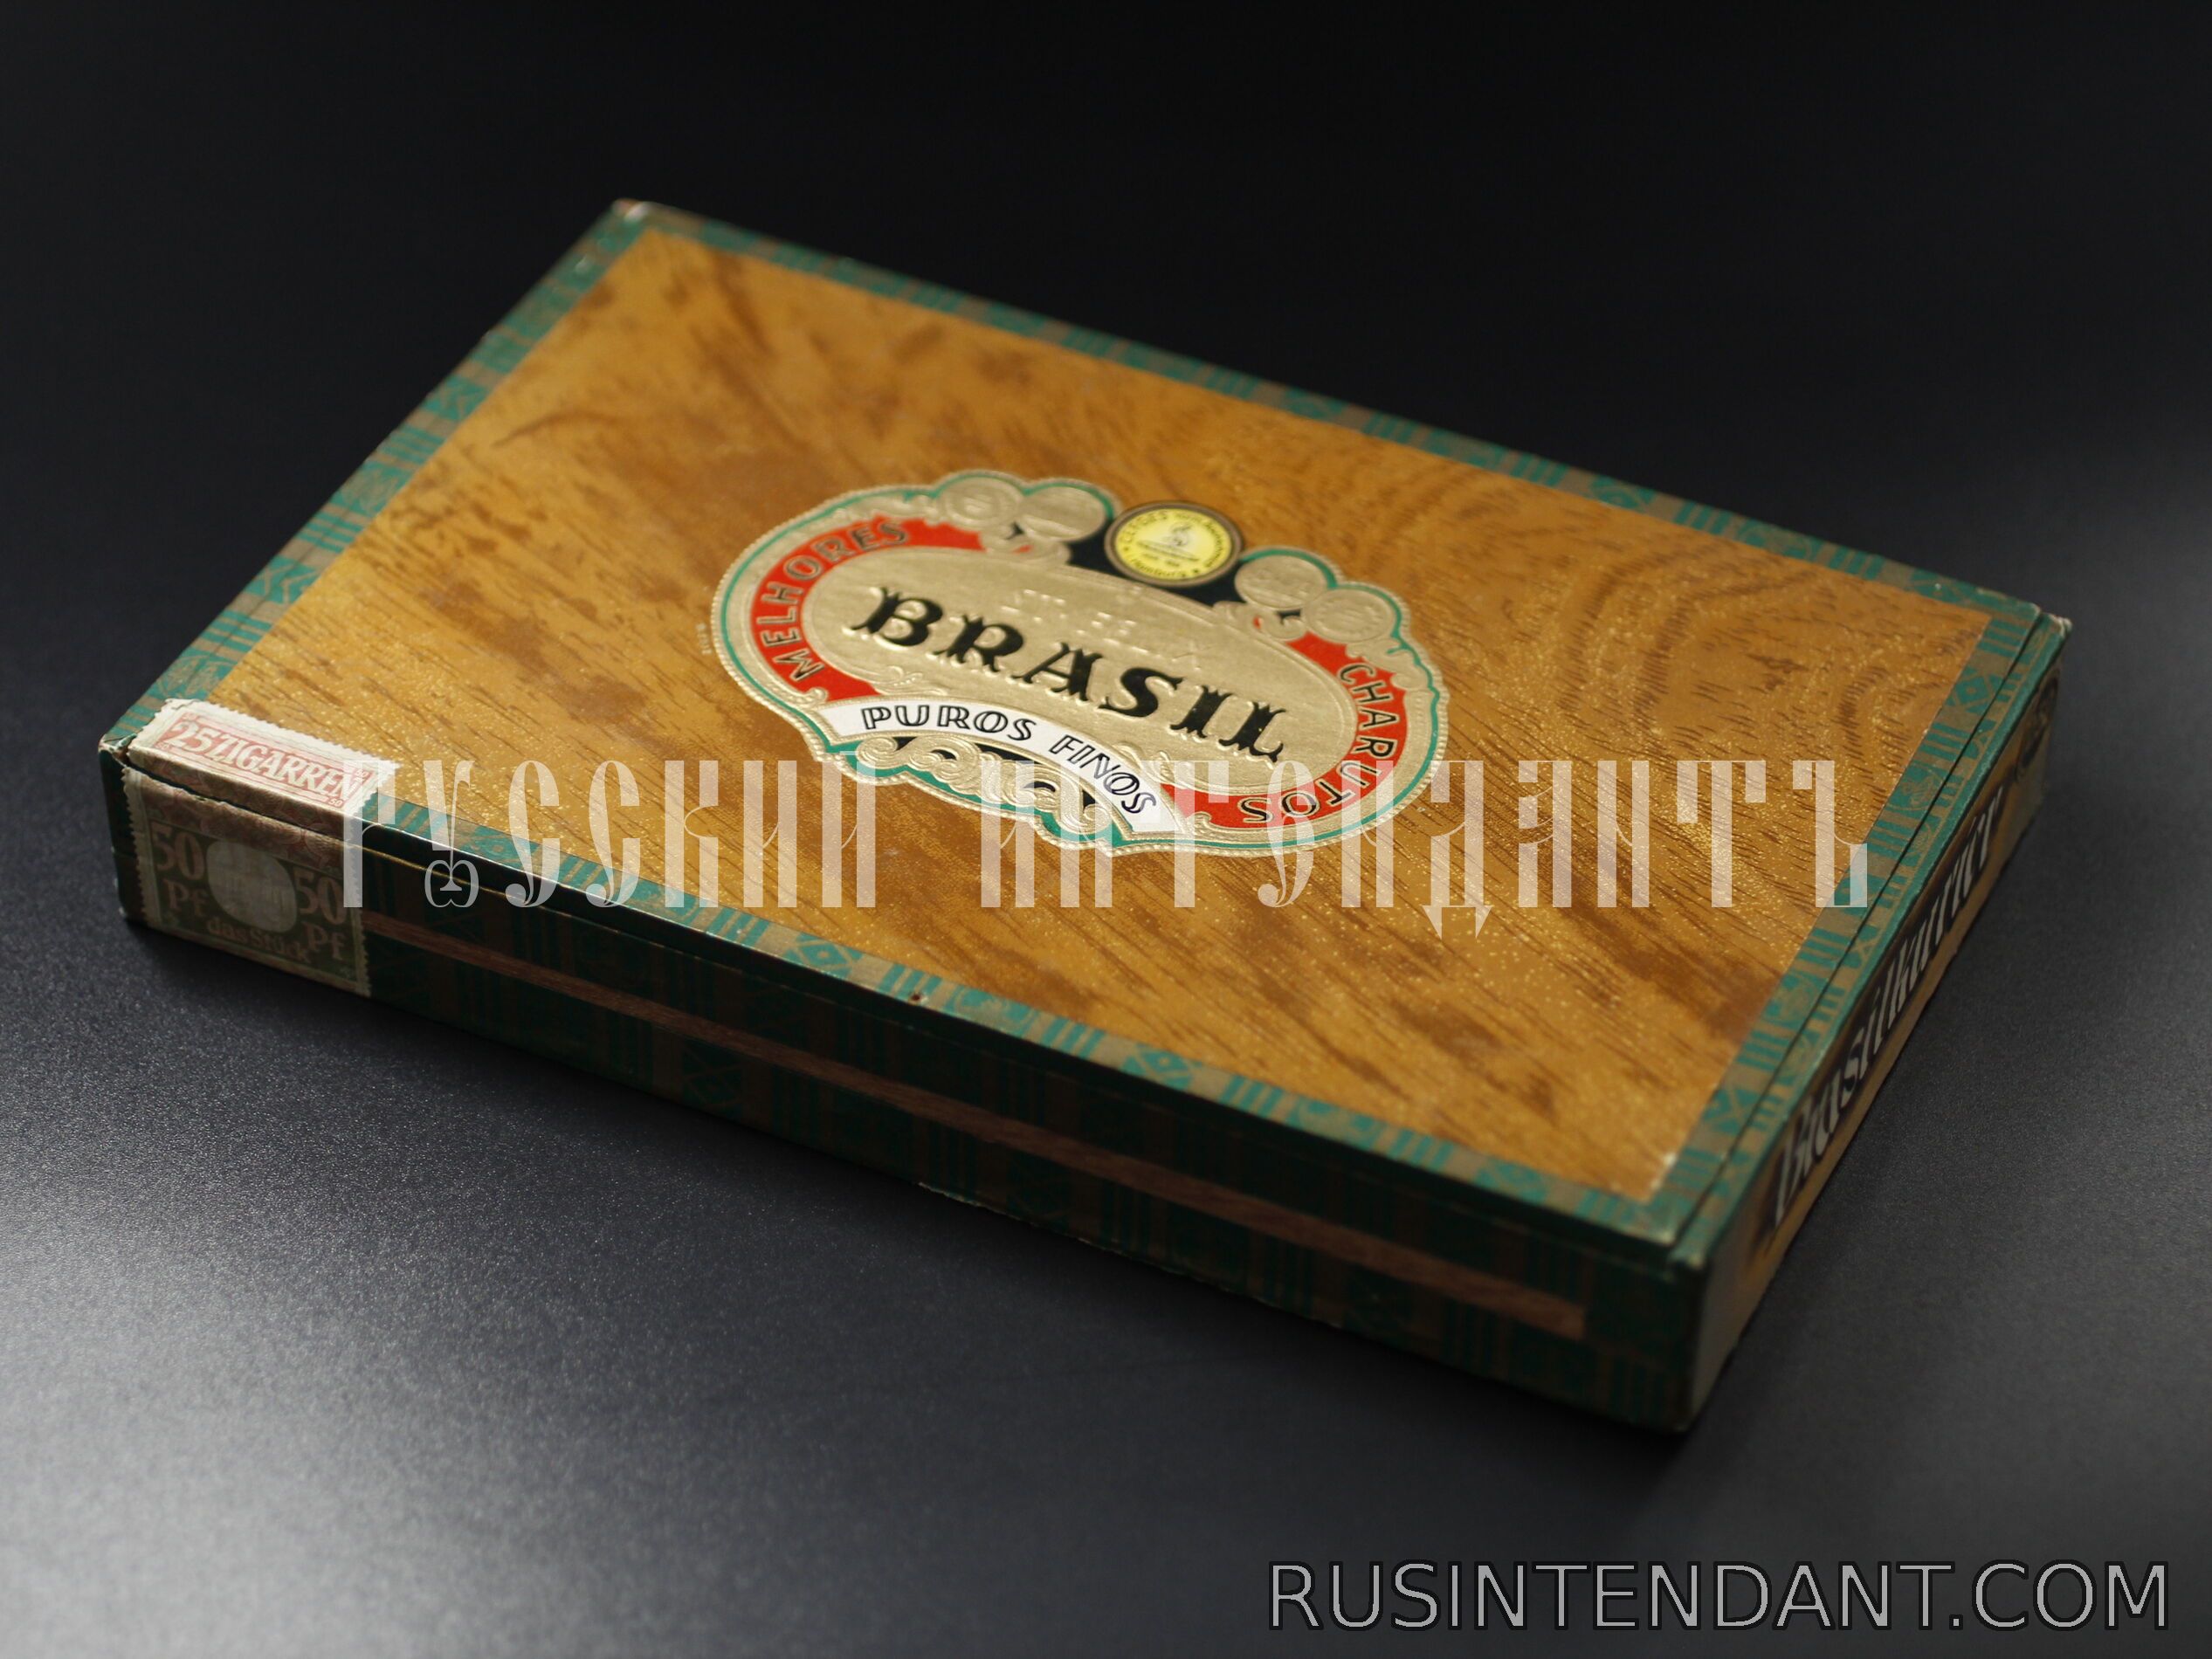 Фото 1: Коробка для сигар с акцизной маркой 